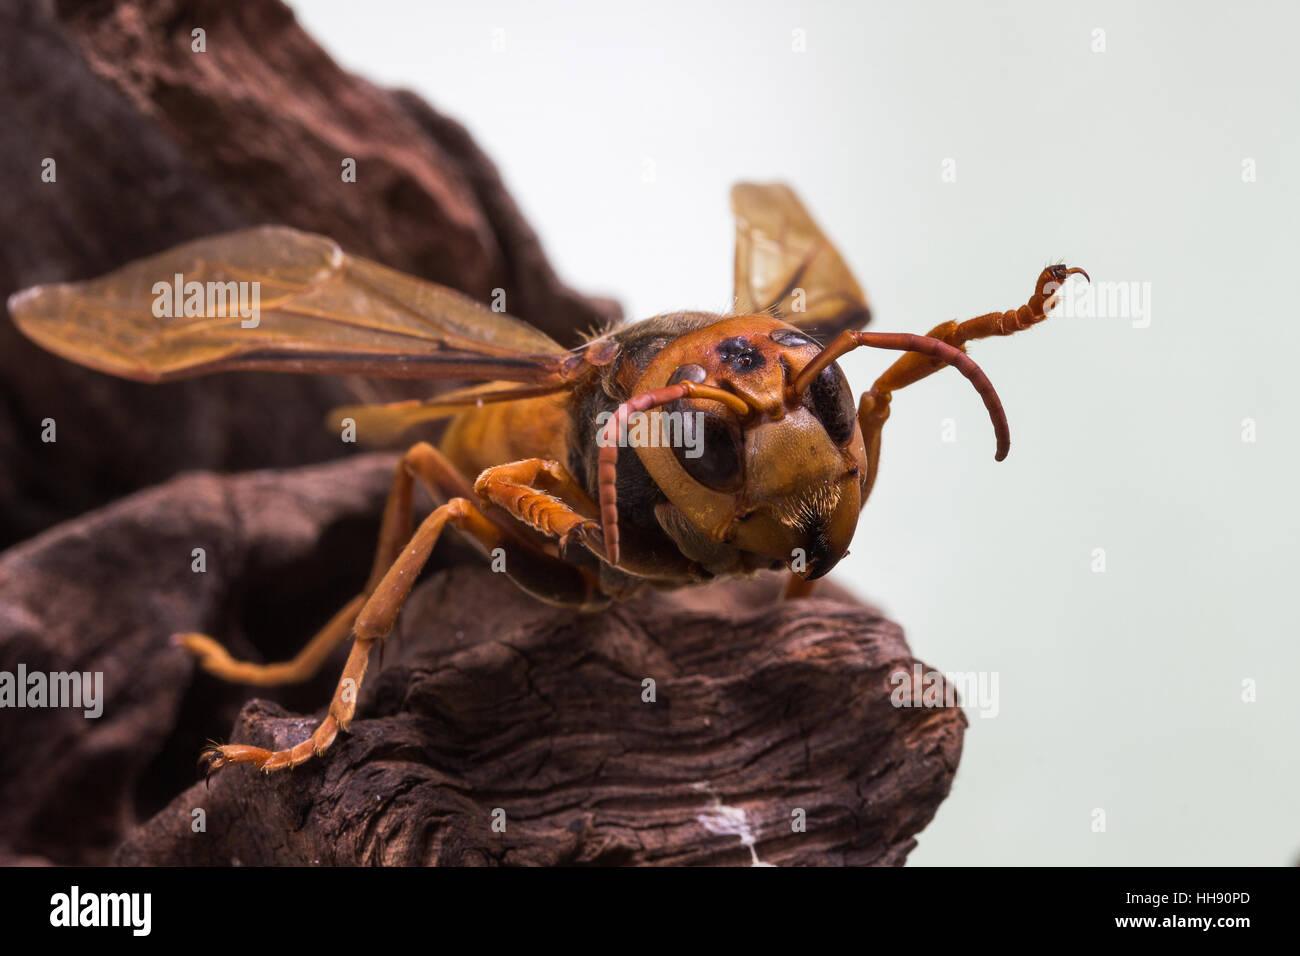 Orange Wasp, Threaten action on stump wood Stock Photo